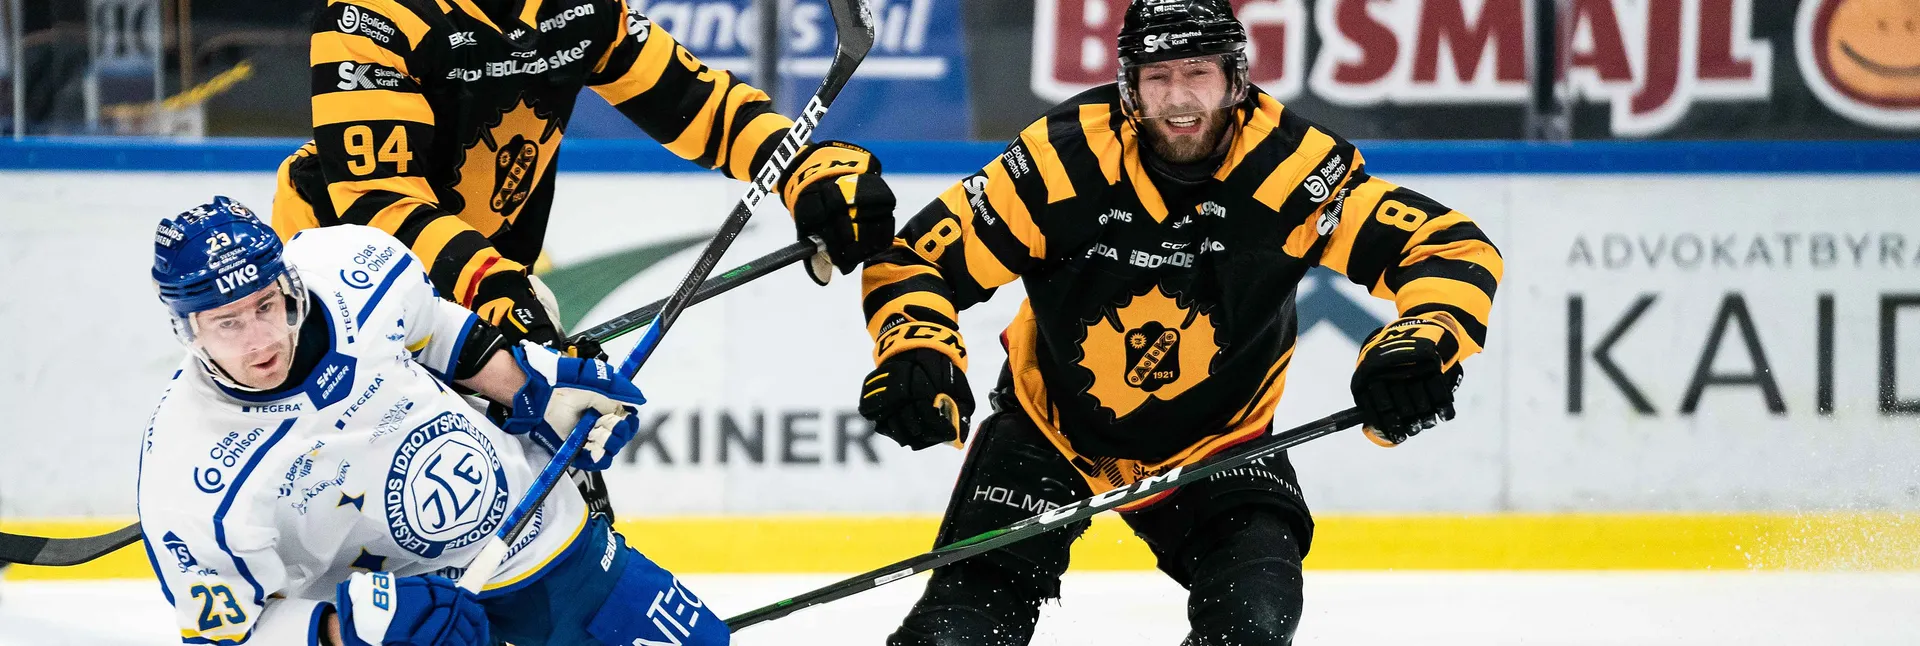 Ishockeymatch mellan Leksand och Skellefteå i SHL